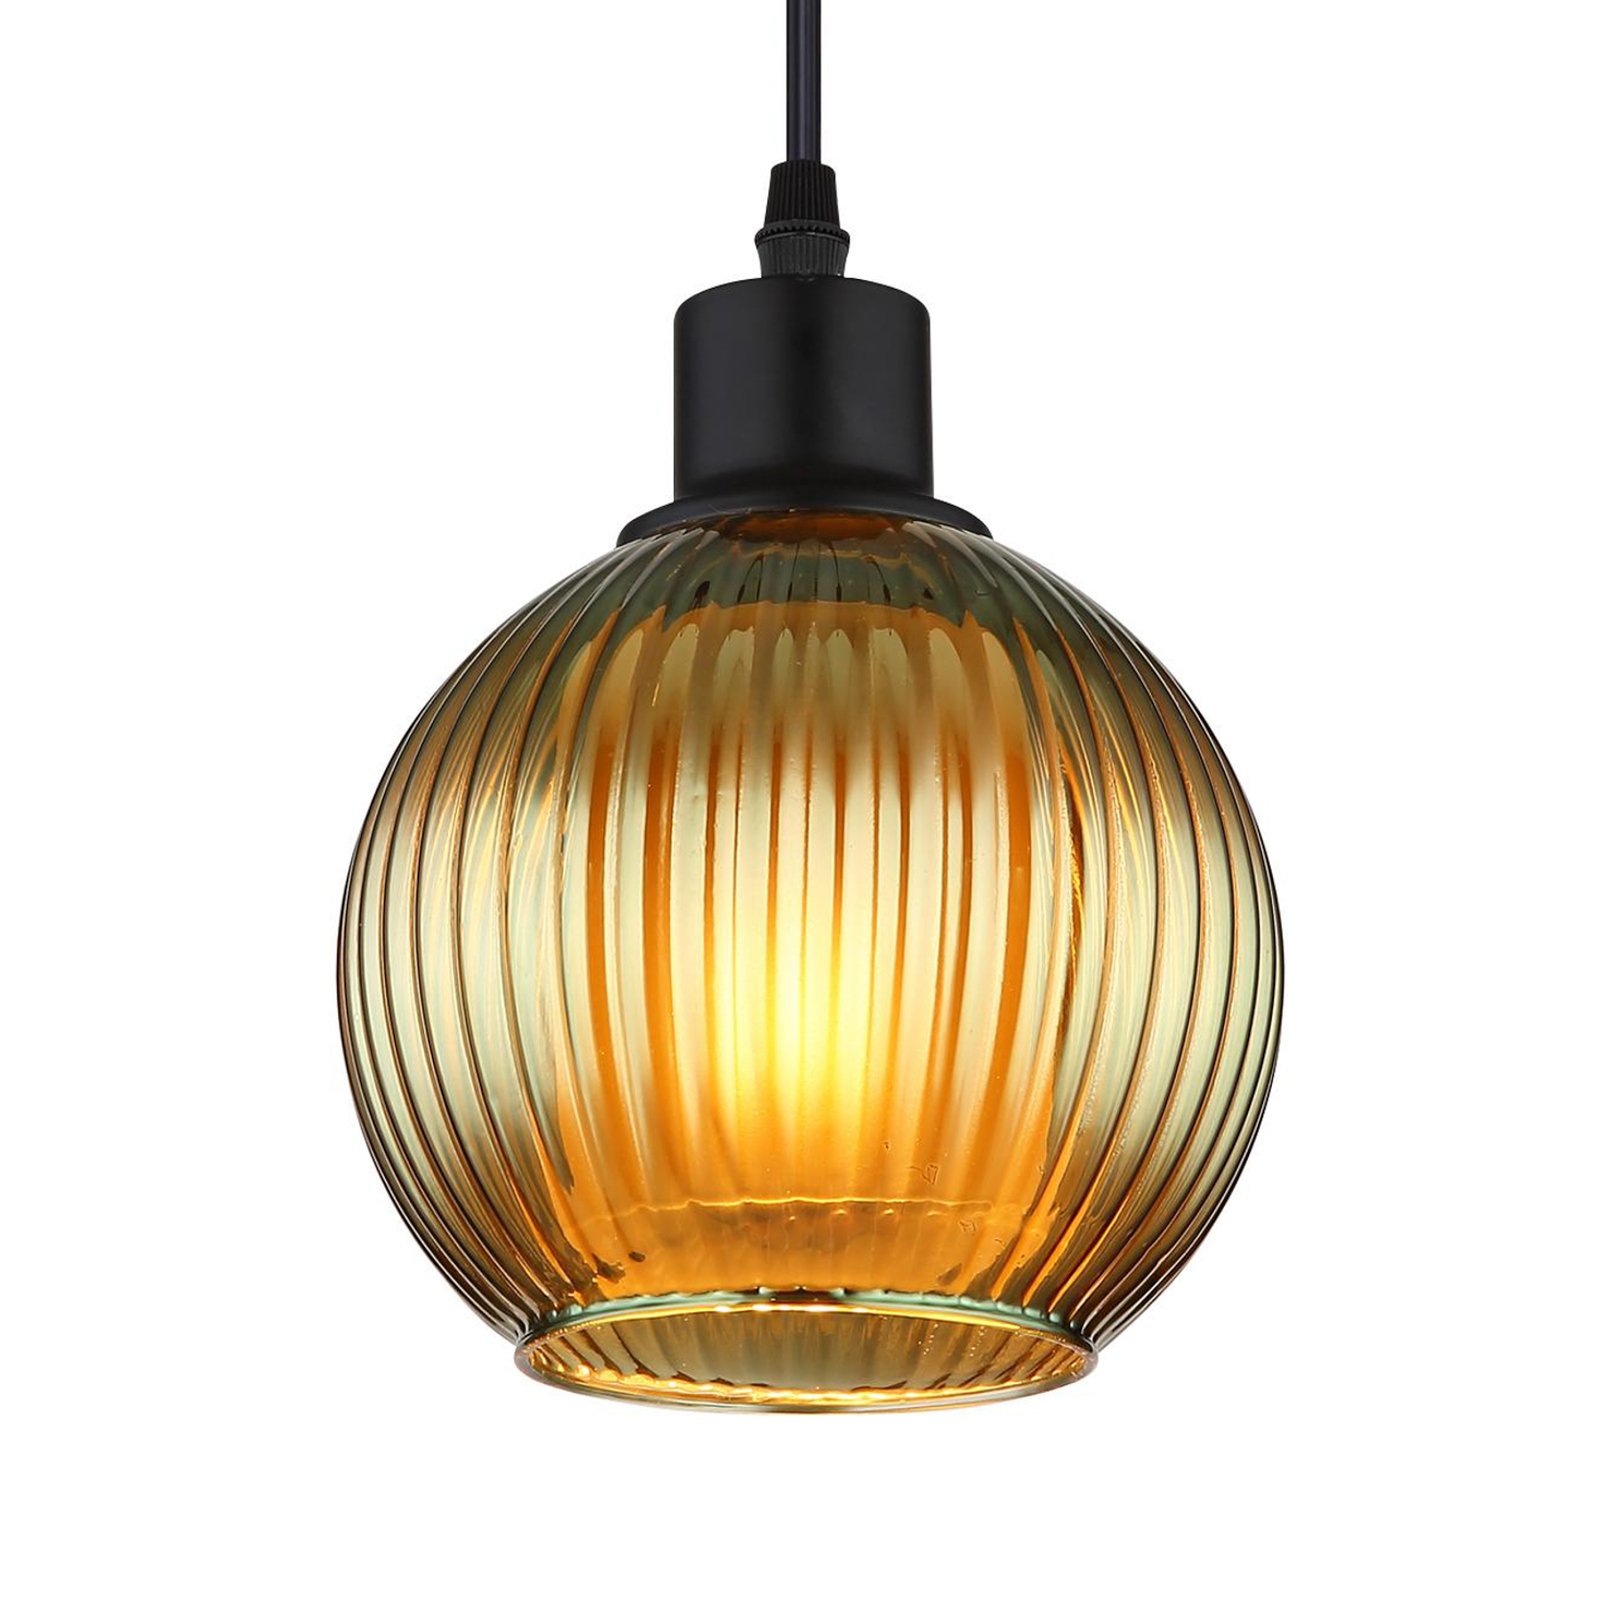 Zumba viseća lampa, zelena/brončana/petrol, 90 cm, 4 žarulje, staklo